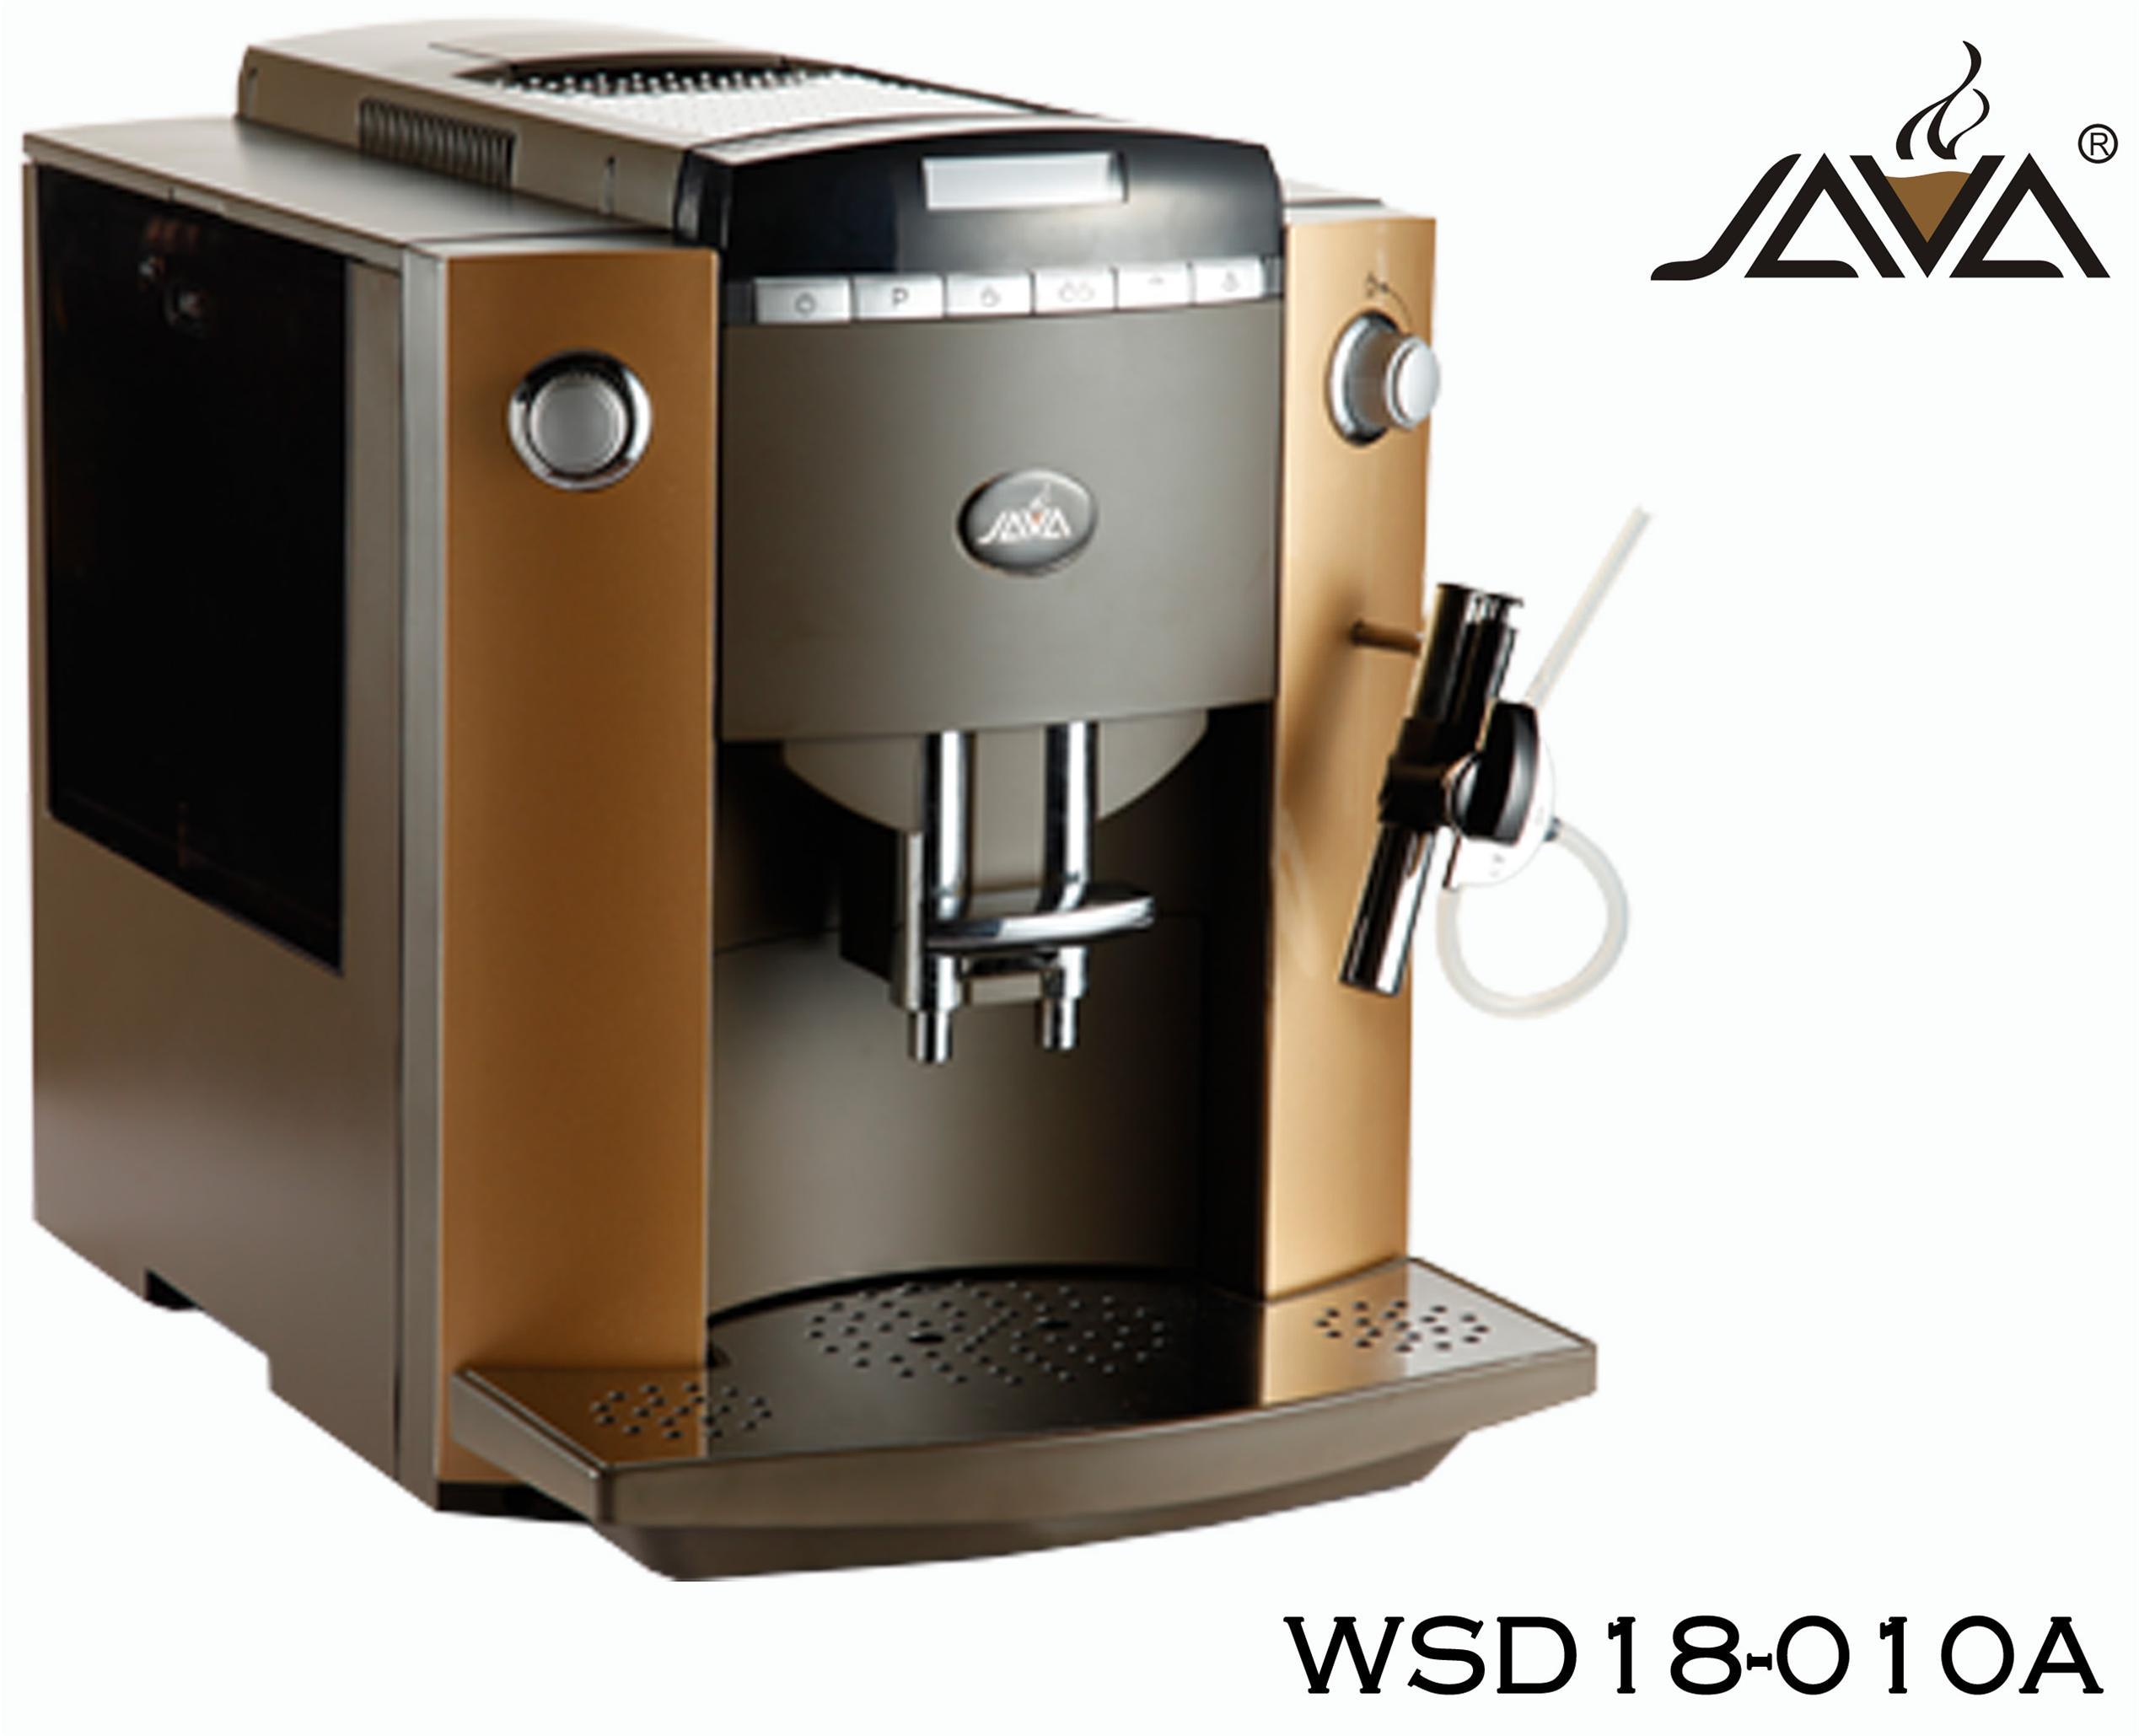 Espresso Coffee and Cappuccino Superautomatic Maker